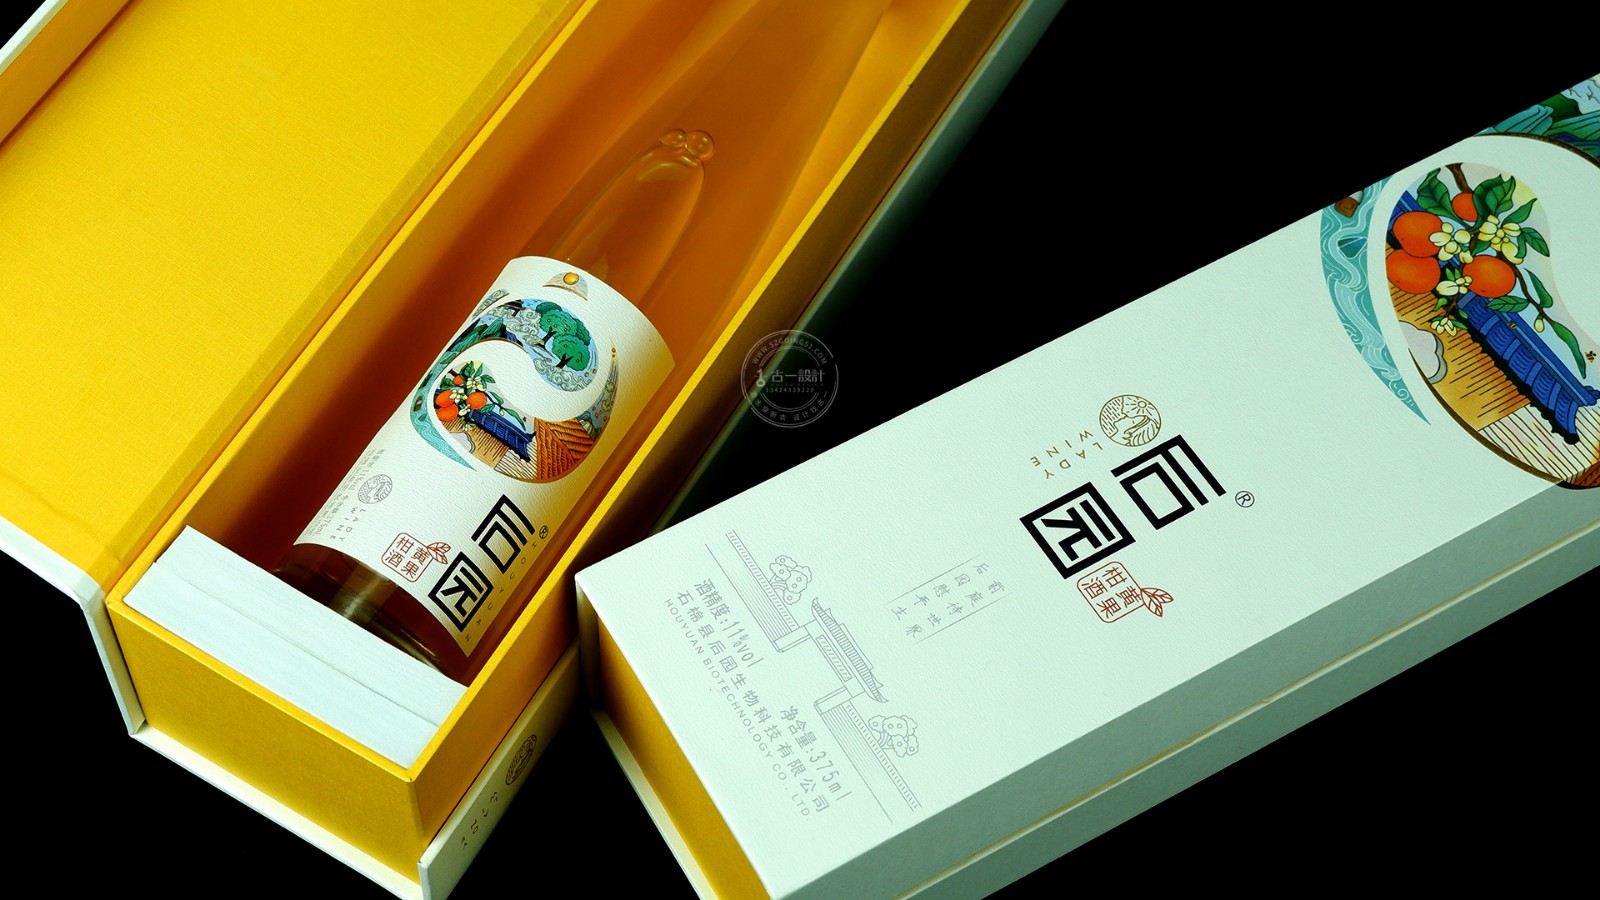 深圳酒包装设计公司,果酒酒标设计,果酒礼盒设计,古一设计